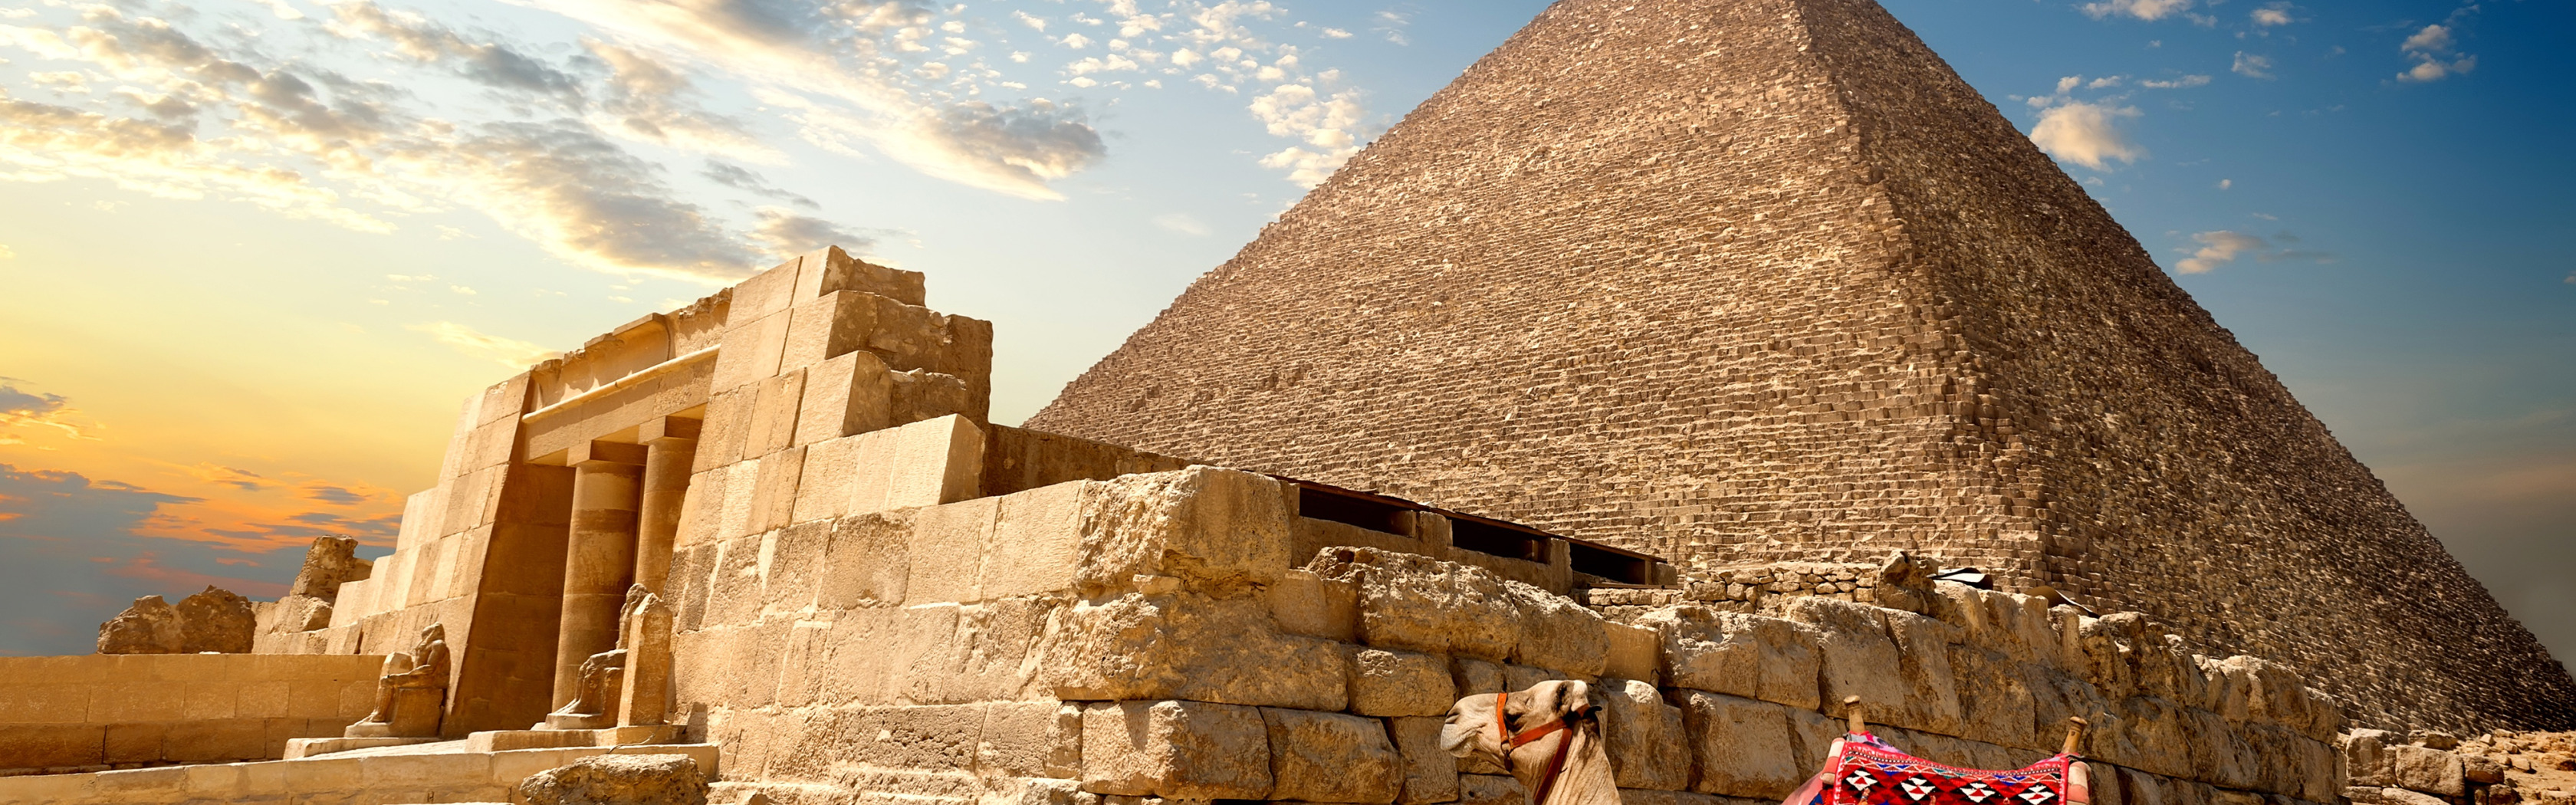 Куча пирамид. Египет пирамиды Верблюды. Пирамида Сенусерта 1. Красная пирамида в Египте. Поздние пирамиды Египта.